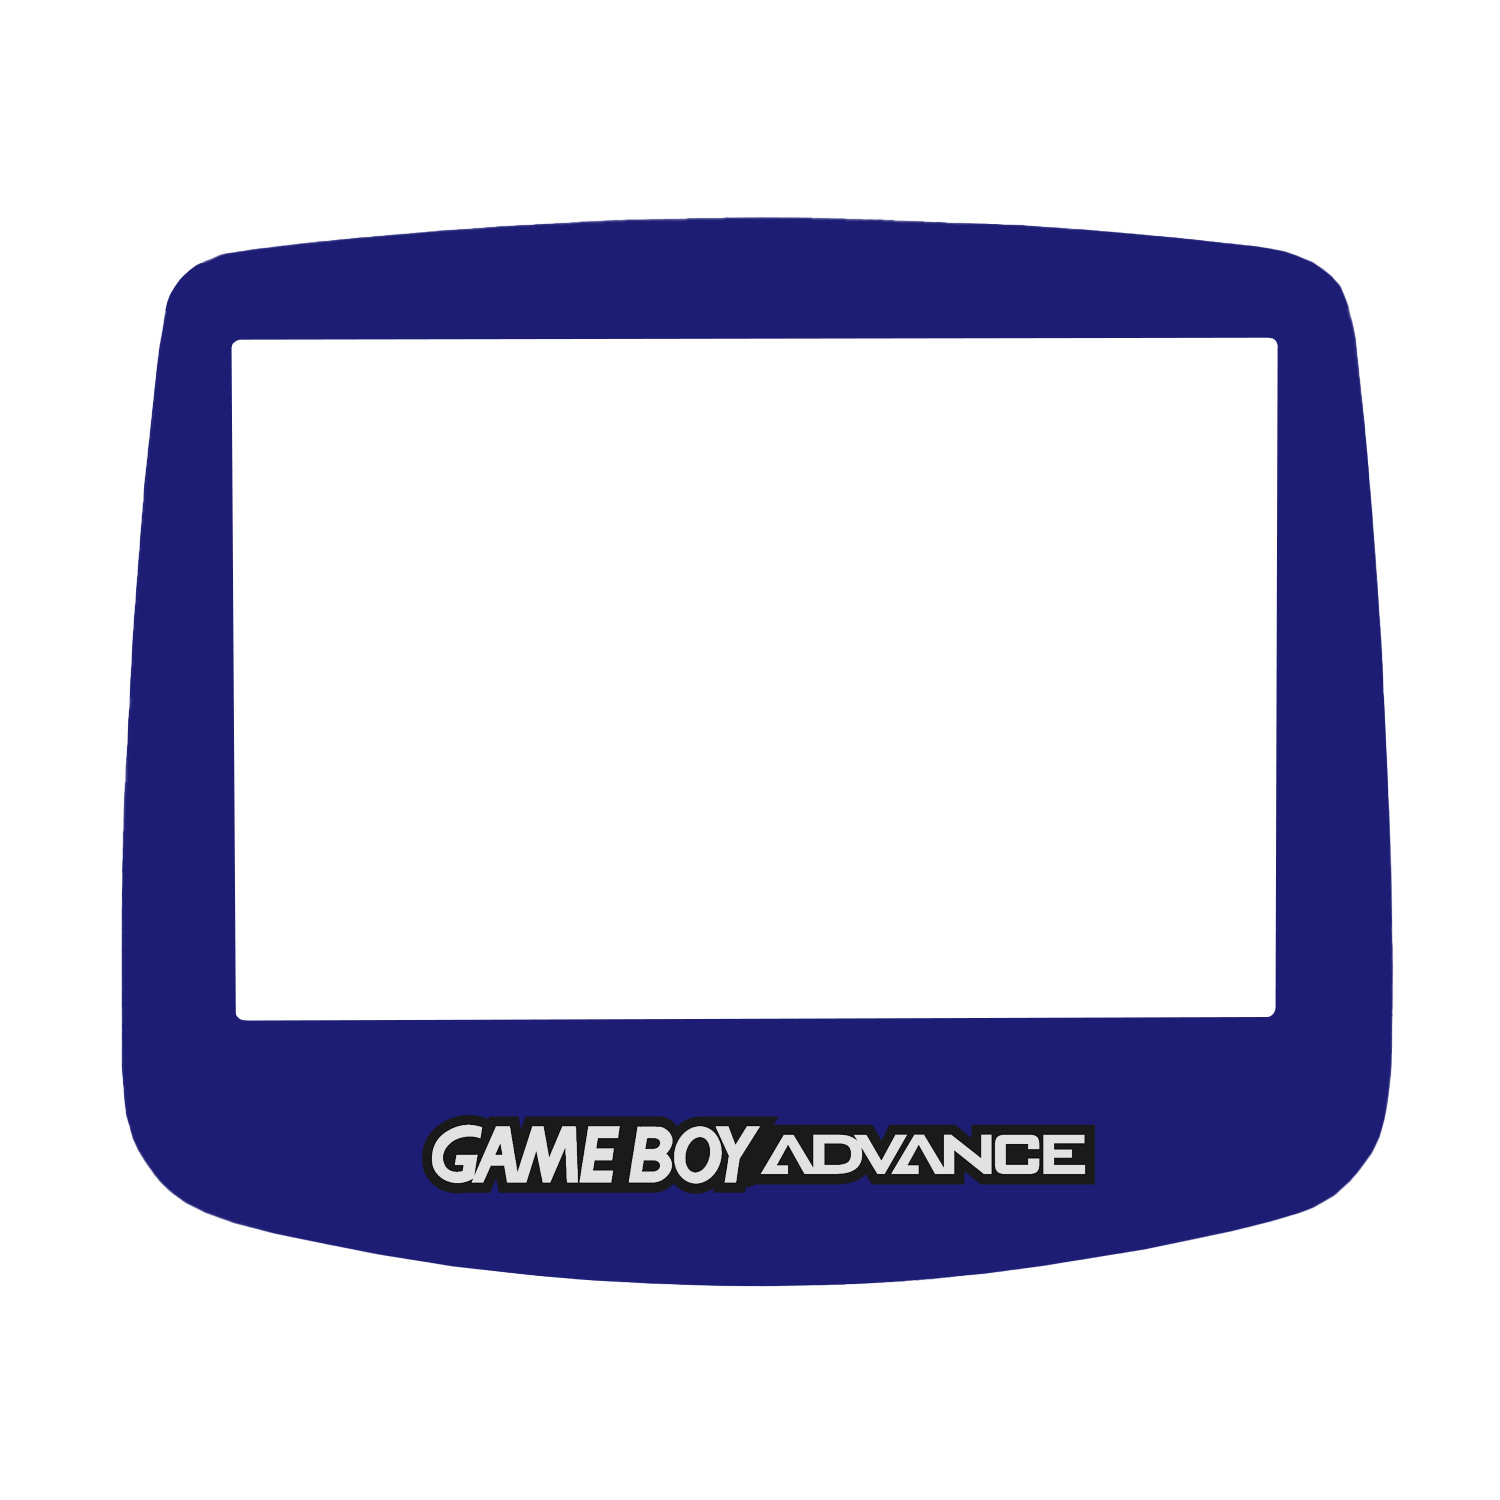 Display Scheibe (Blau) für Game Boy Advance